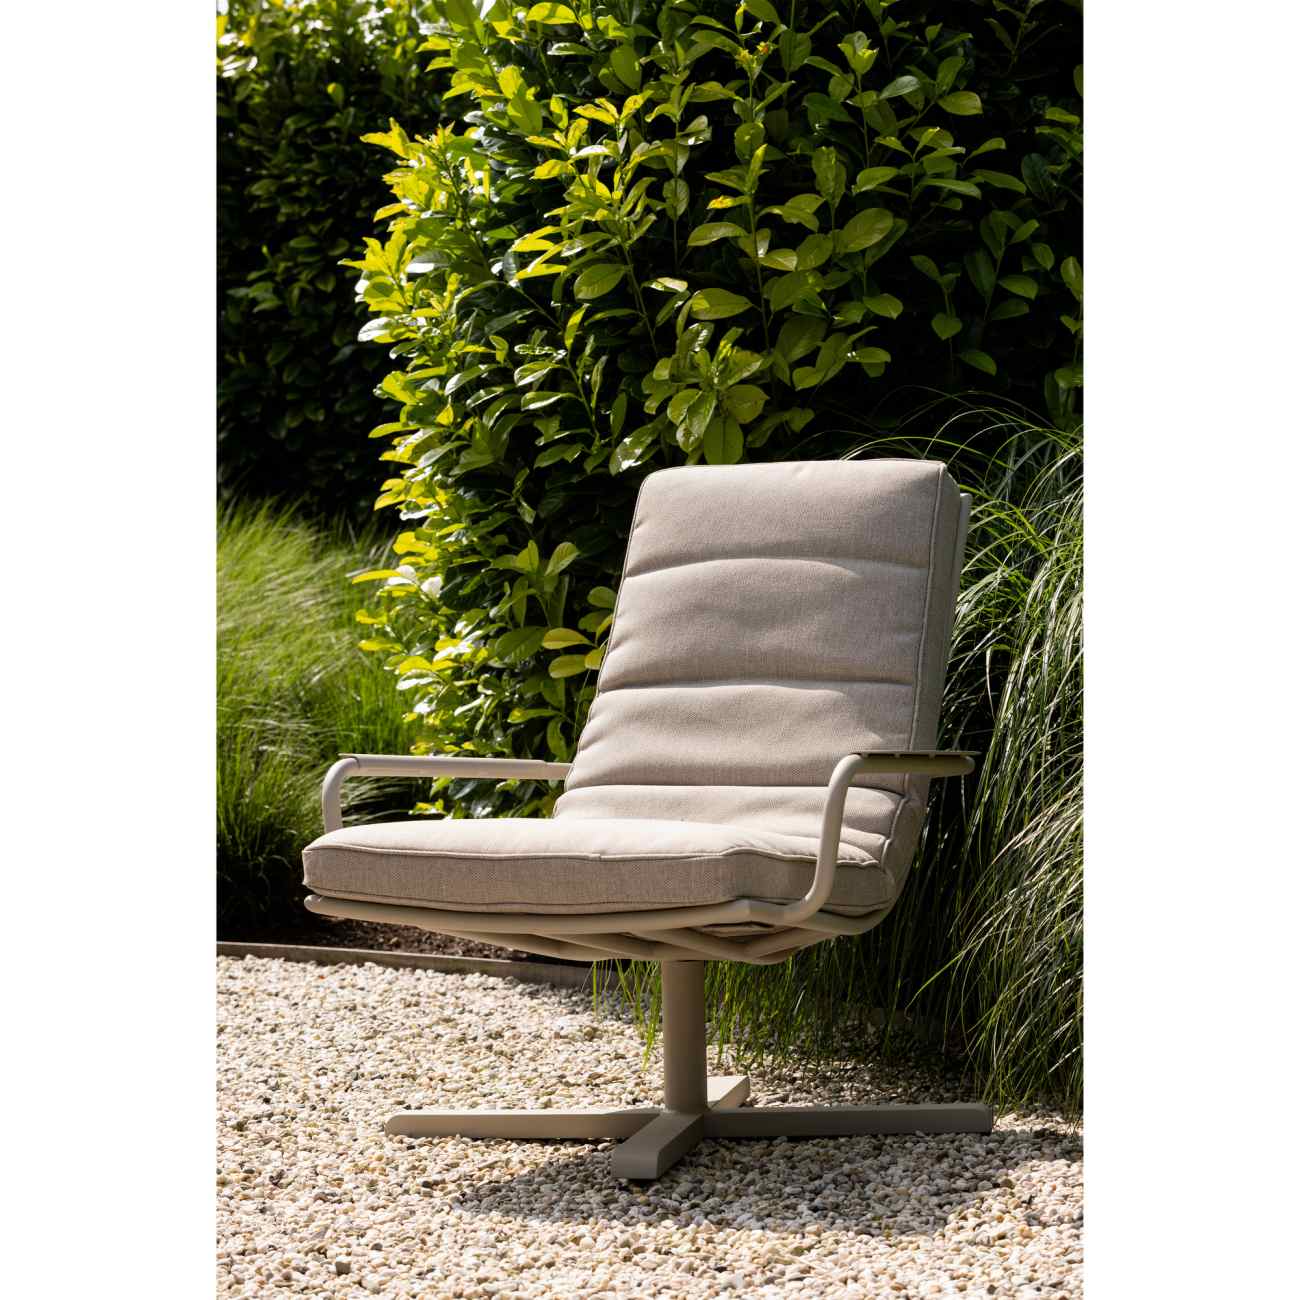 Der Gartensessel Stony überzeugt mit seinem modernen Design. Gefertigt wurde er aus Stoff, welches einen Sand Farbton besitzt. Das Gestell ist aus Aluminium und hat eine Sand Farbe. Der Sessel besitzt eine Sitzhöhe von 40 cm.